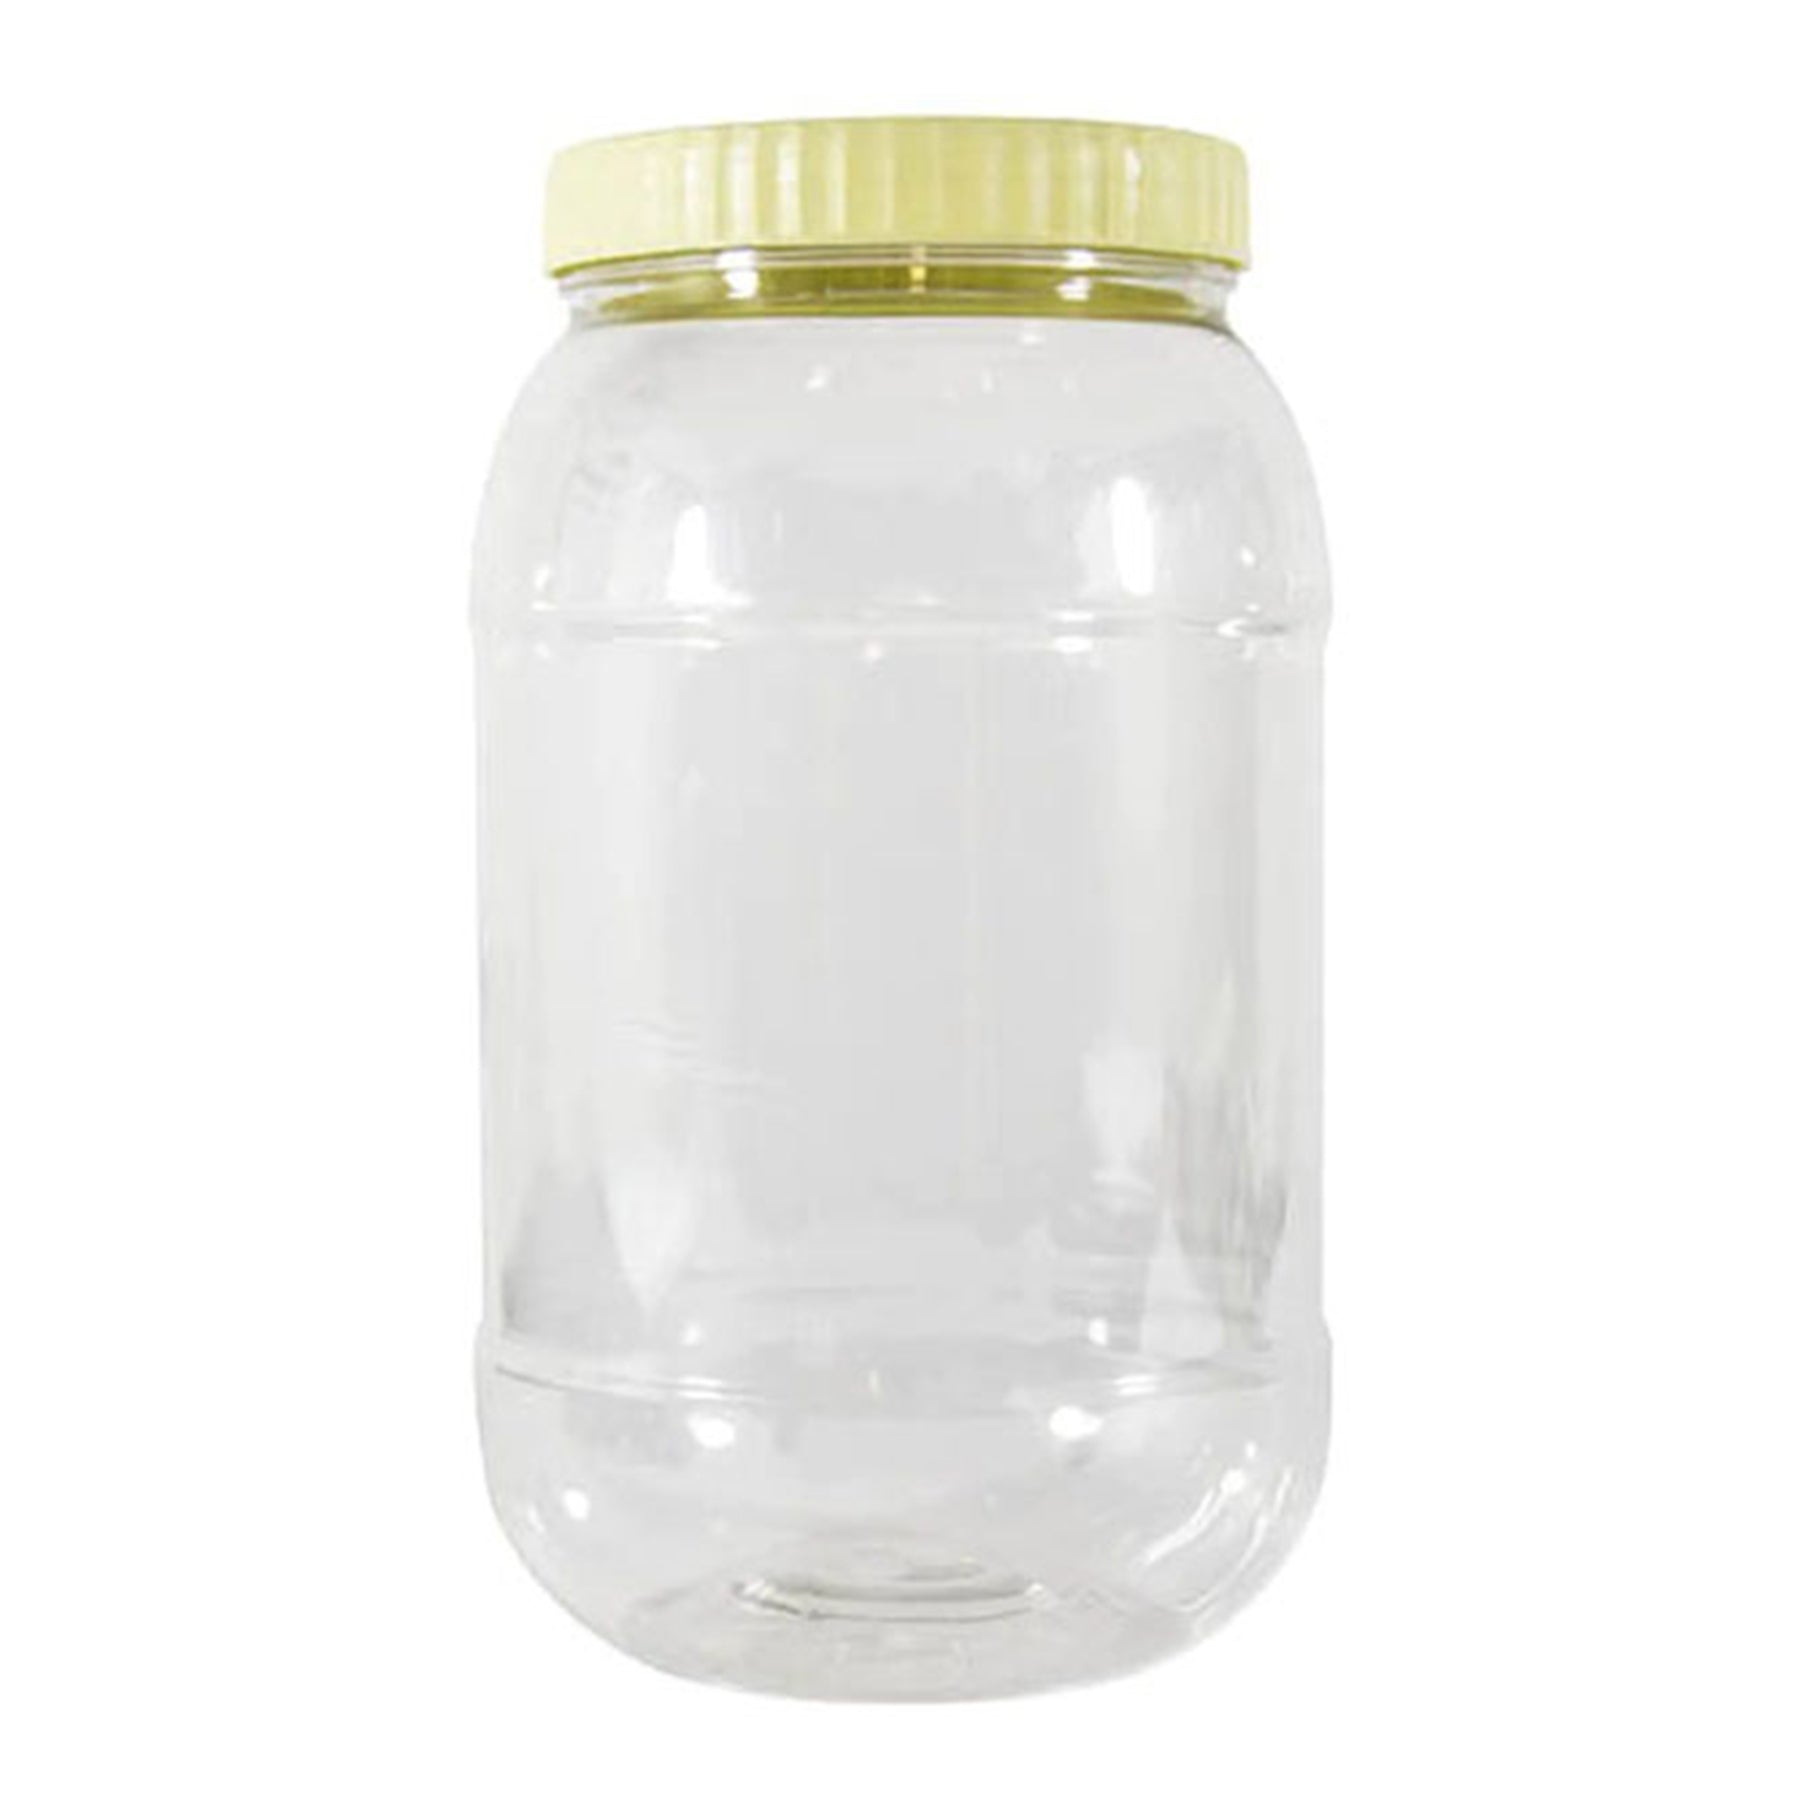 Round clear jar